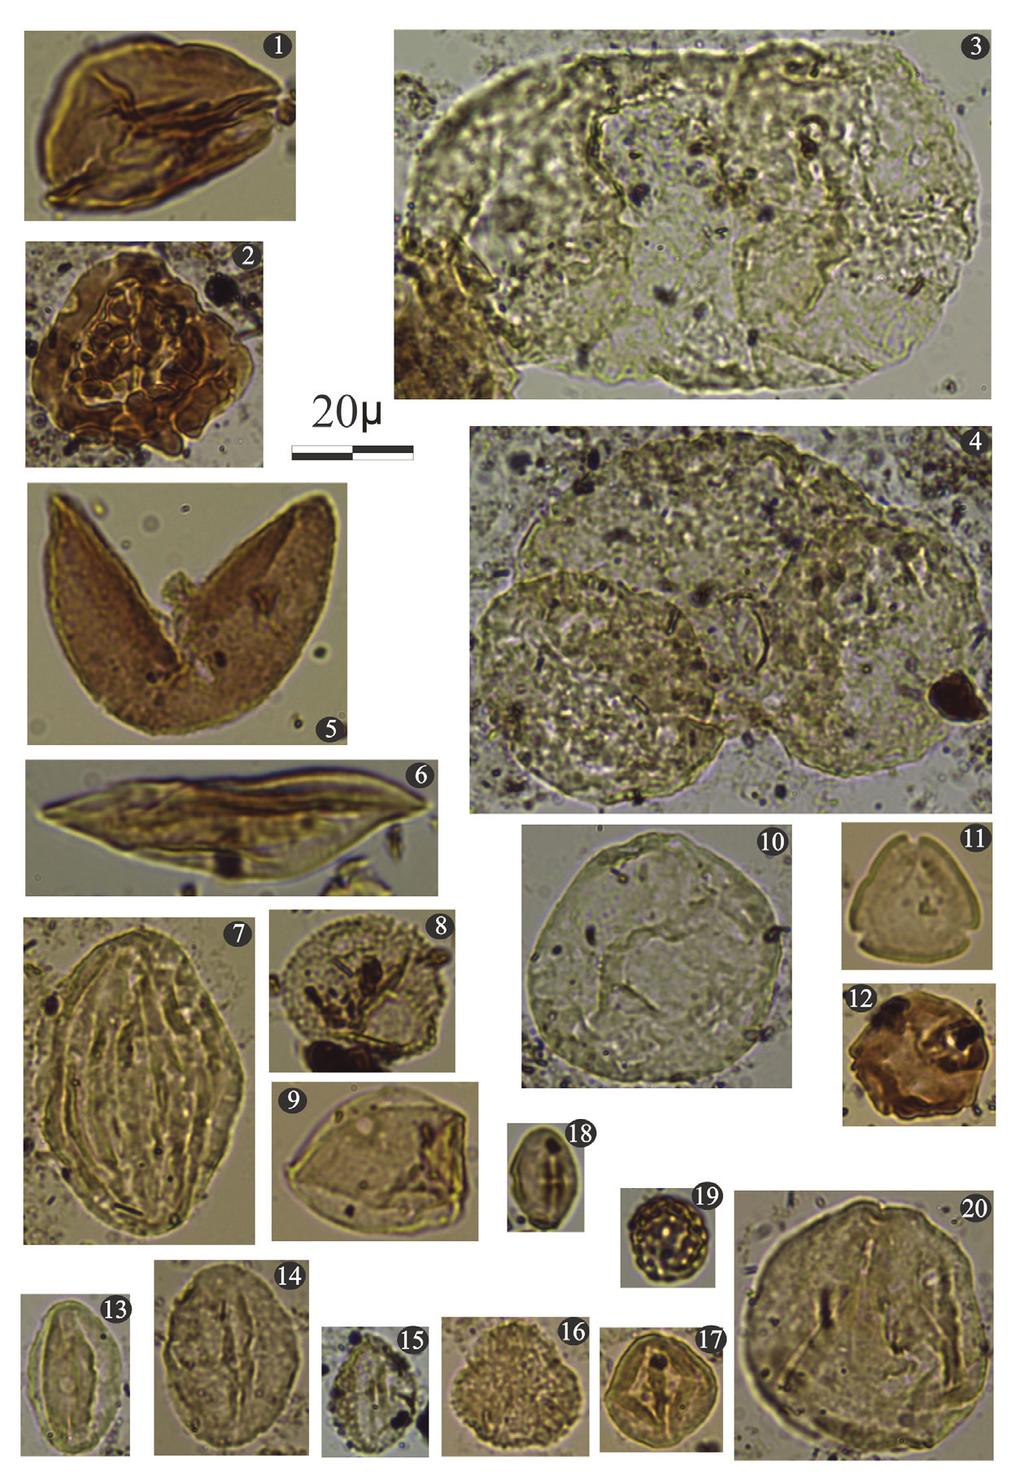 Erken-Orta Miyosen Yaşlı Kömürlü Tortulların Paleoekolojisi: Uşak-Güre ve Soma Havzalarından Örnekler LEVHA 2 (Tüm örnekler Arabacıbozköy lokasyonuna aittir. ler için ölçek 20µm) 1. Lygodium, 2.